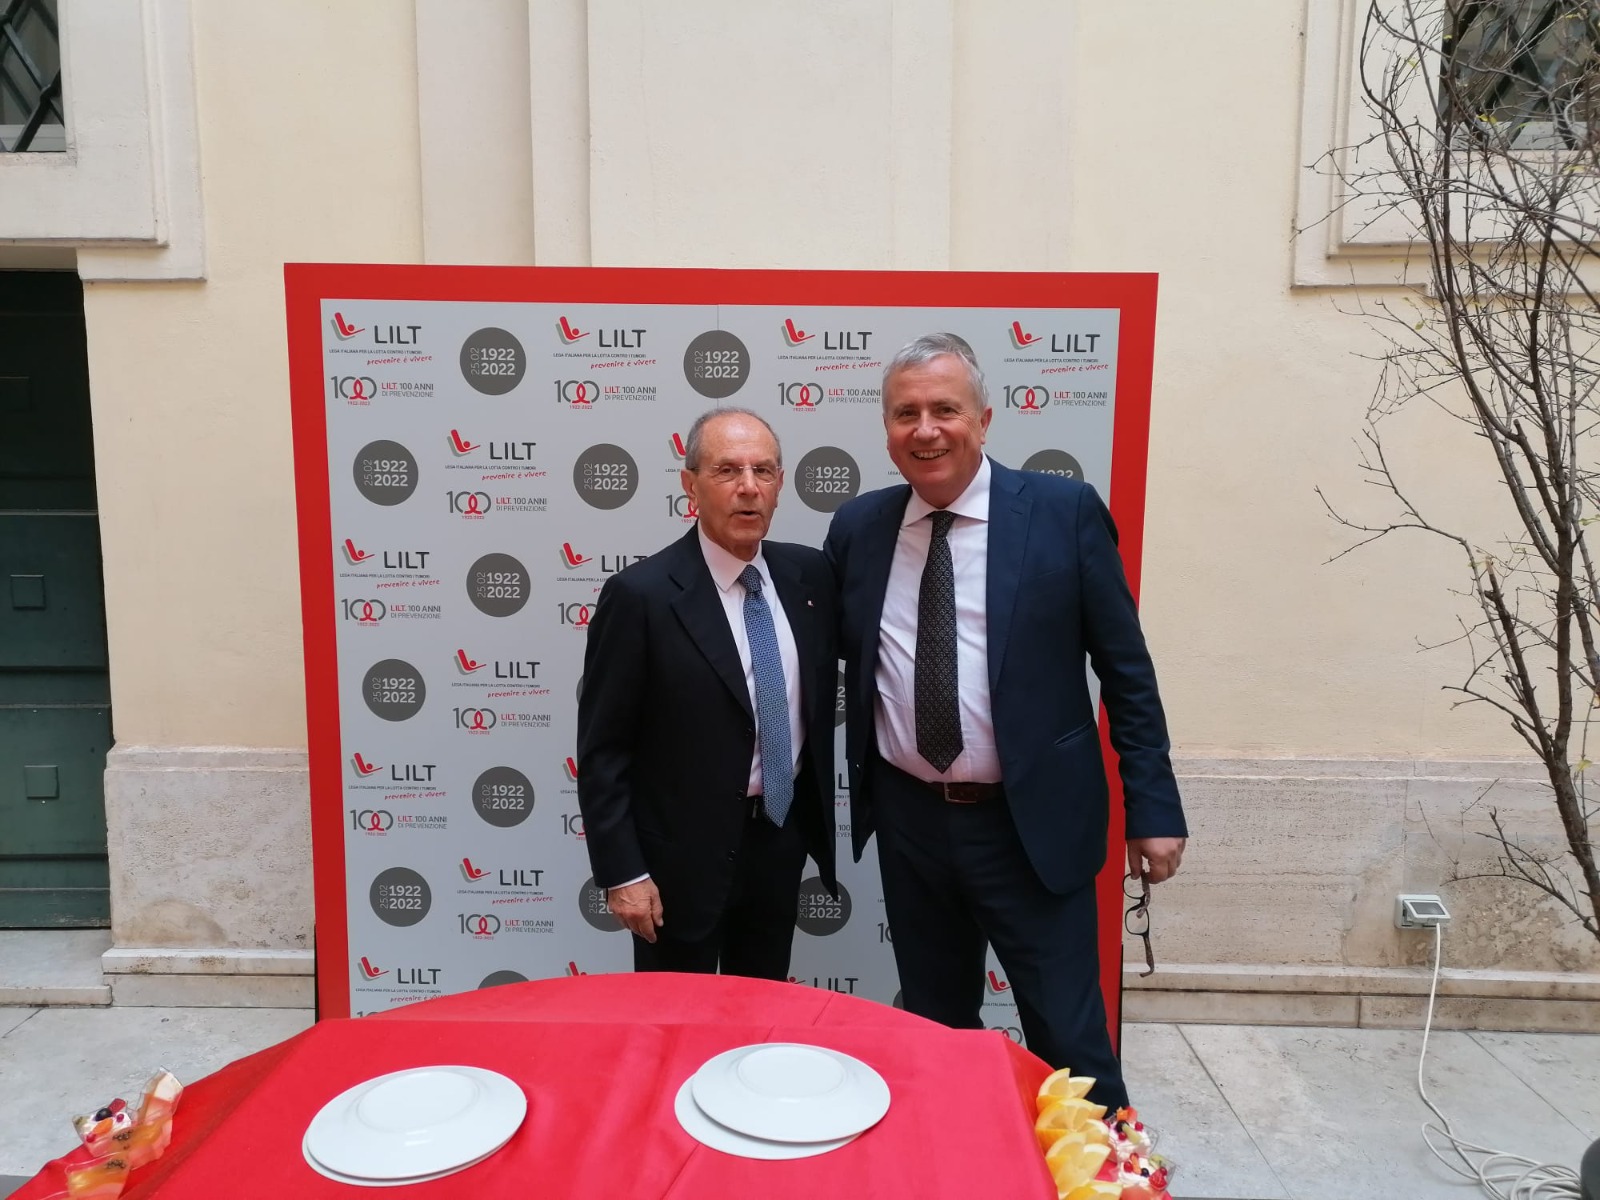 Fondazione Vassallo: a Dario Vassallo il premio della LILT per i 100 anni di lotta contro i tumori